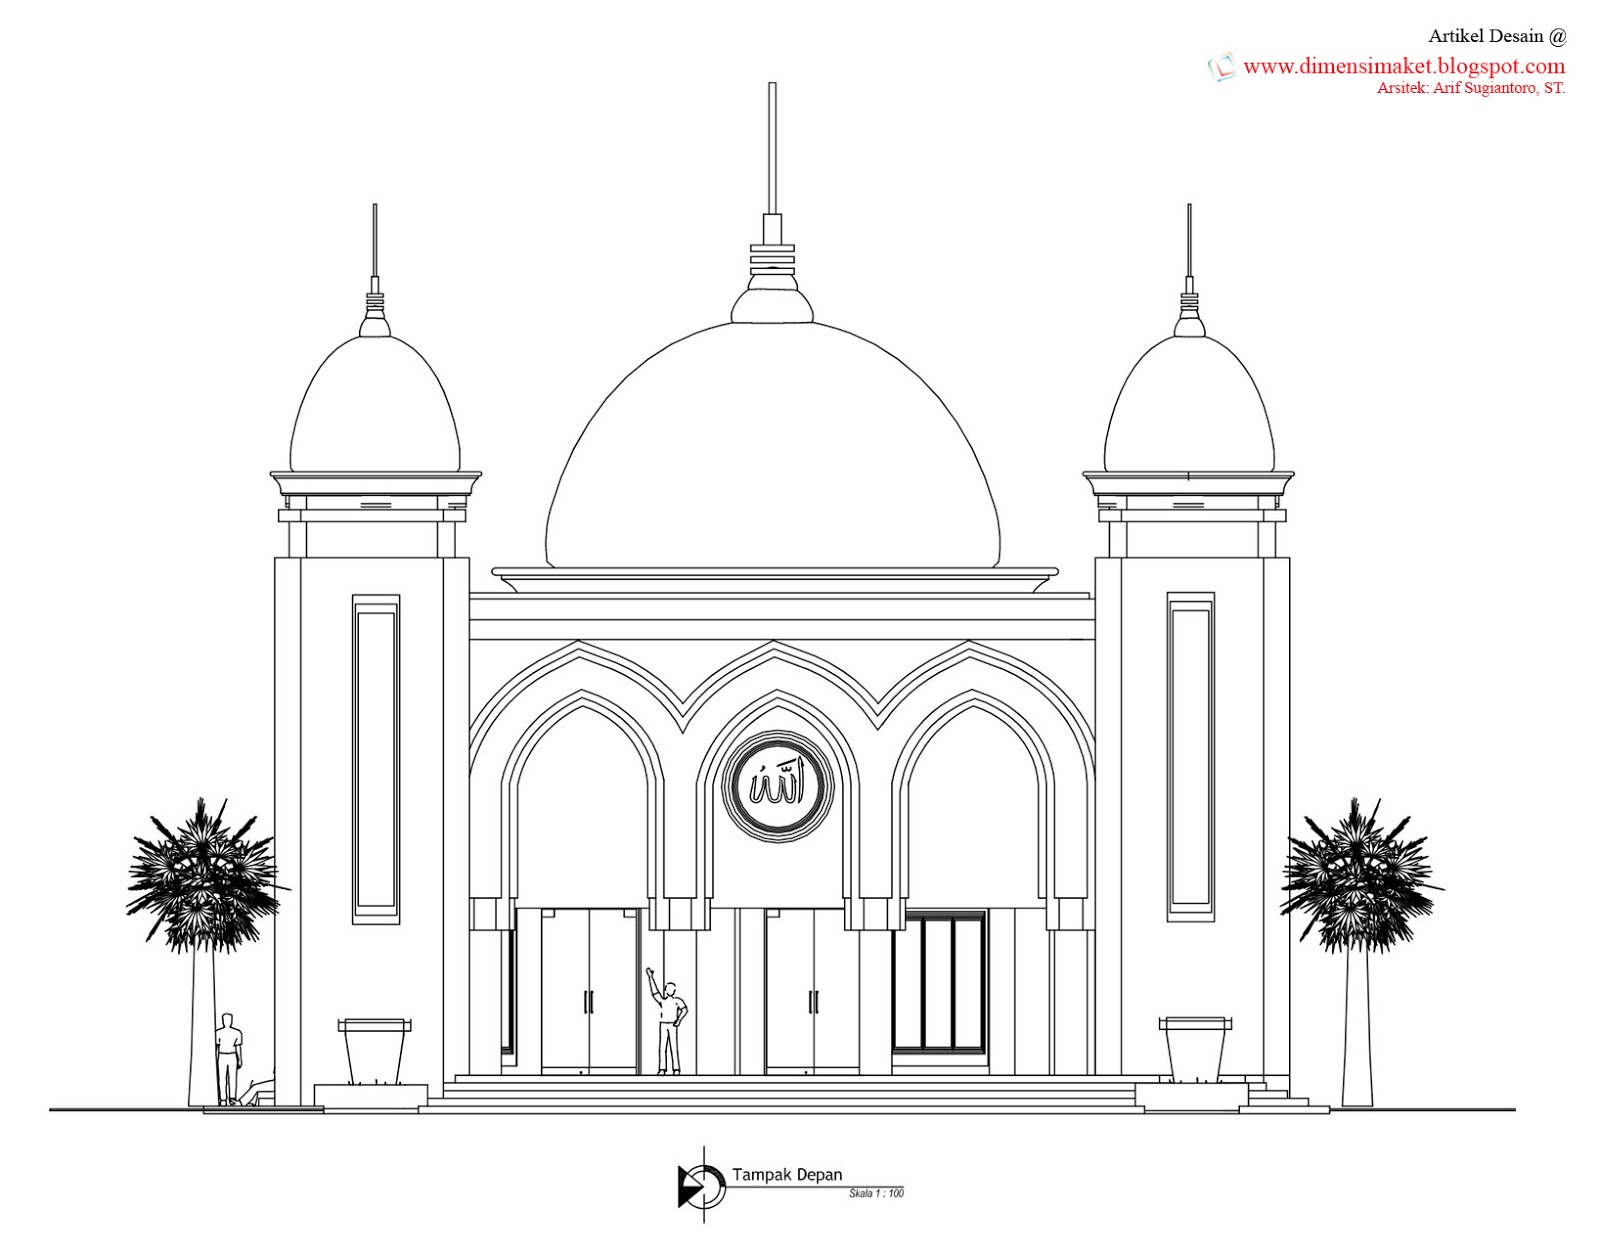 Desain Masjid  Musholla 010 Perencanaan Masjid  Al Huda 